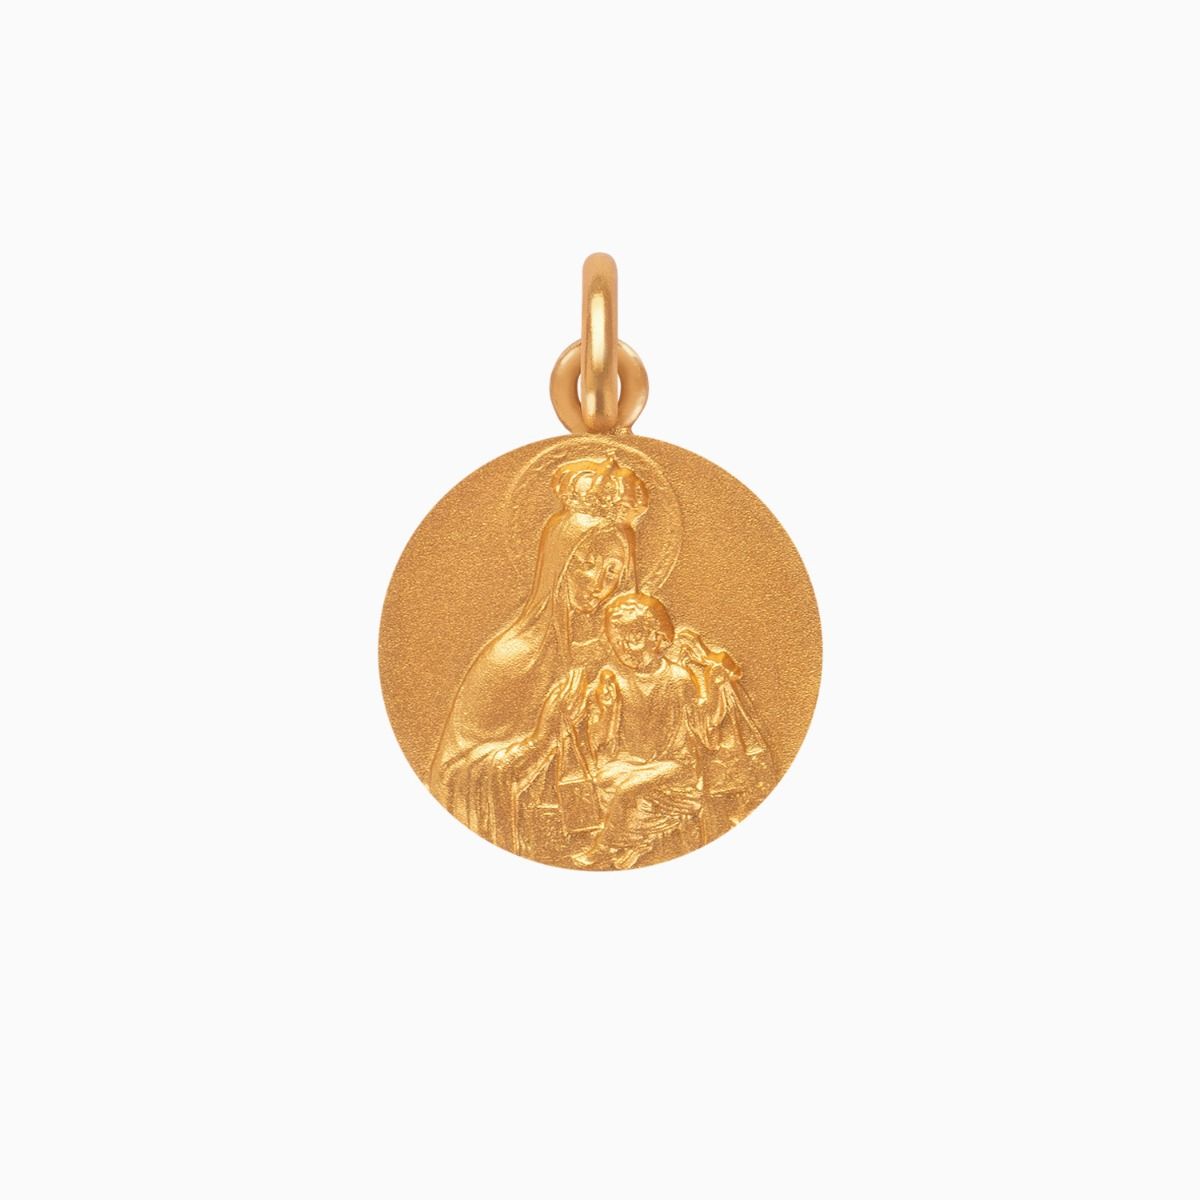 Medalla infantil en oro amarillo "Virgen del Carmen"